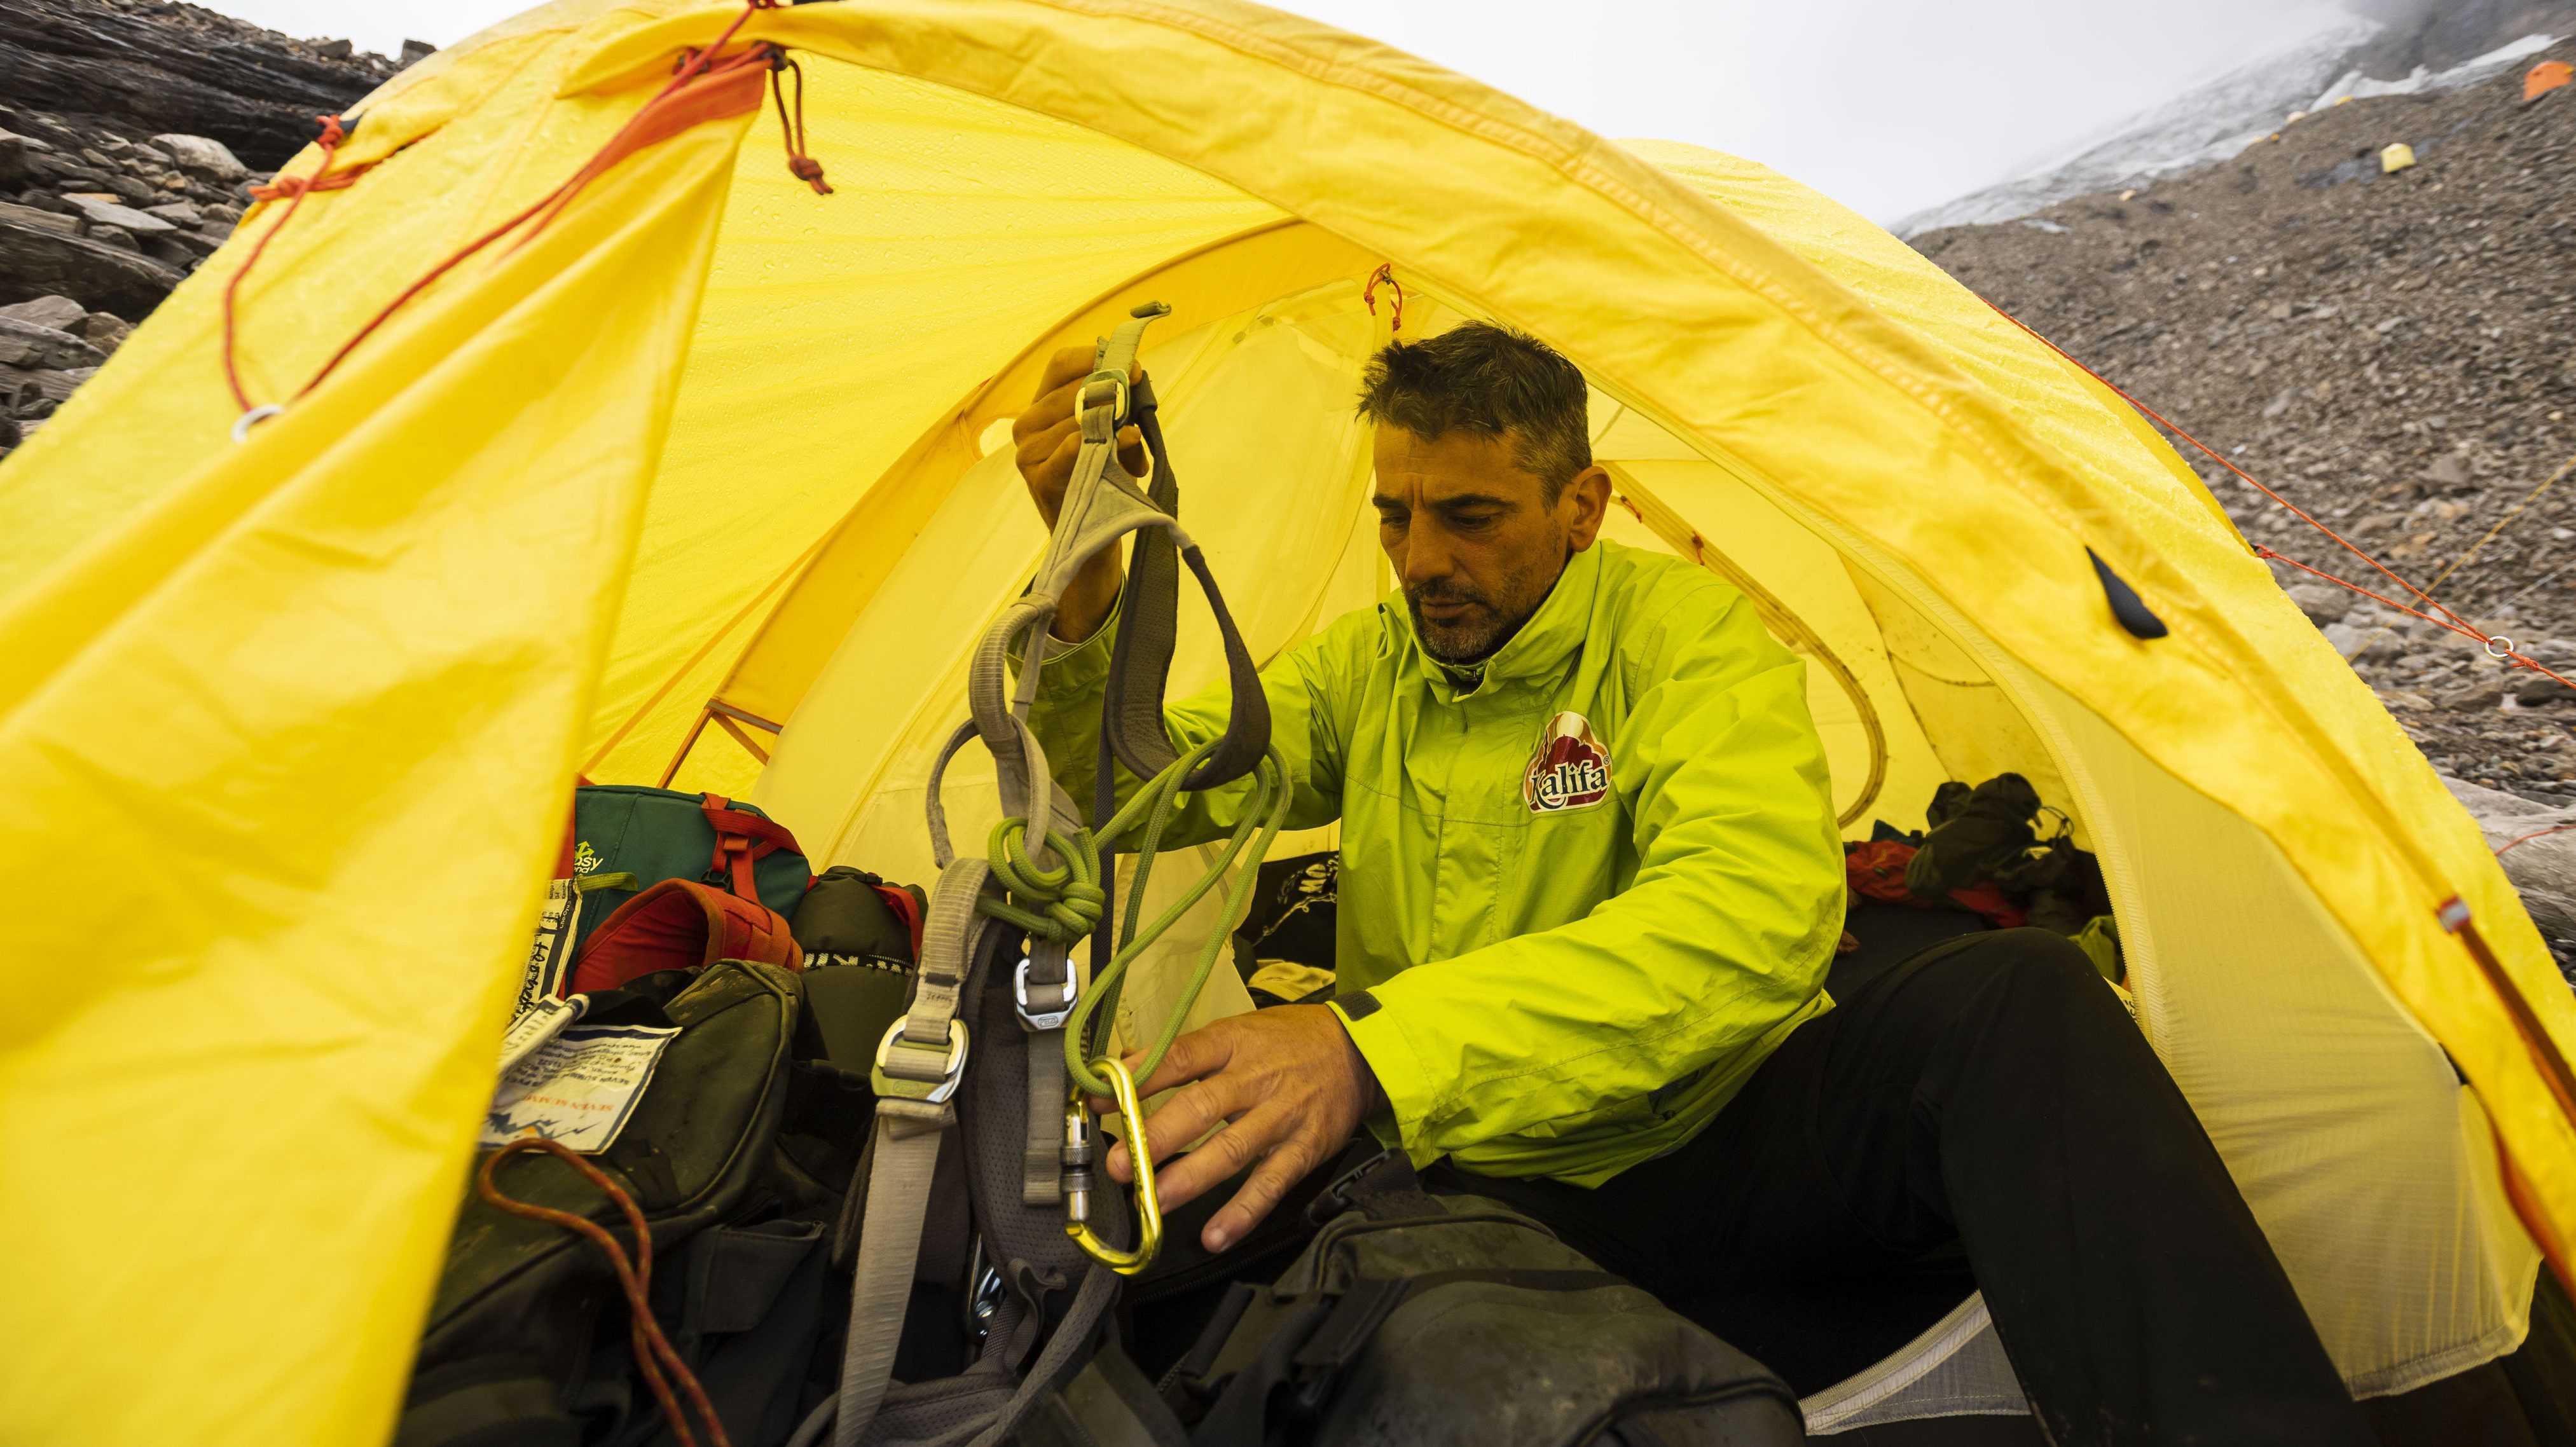 A magyar hegymászó megindult a világ nyolcadik legmagasabb csúcsára